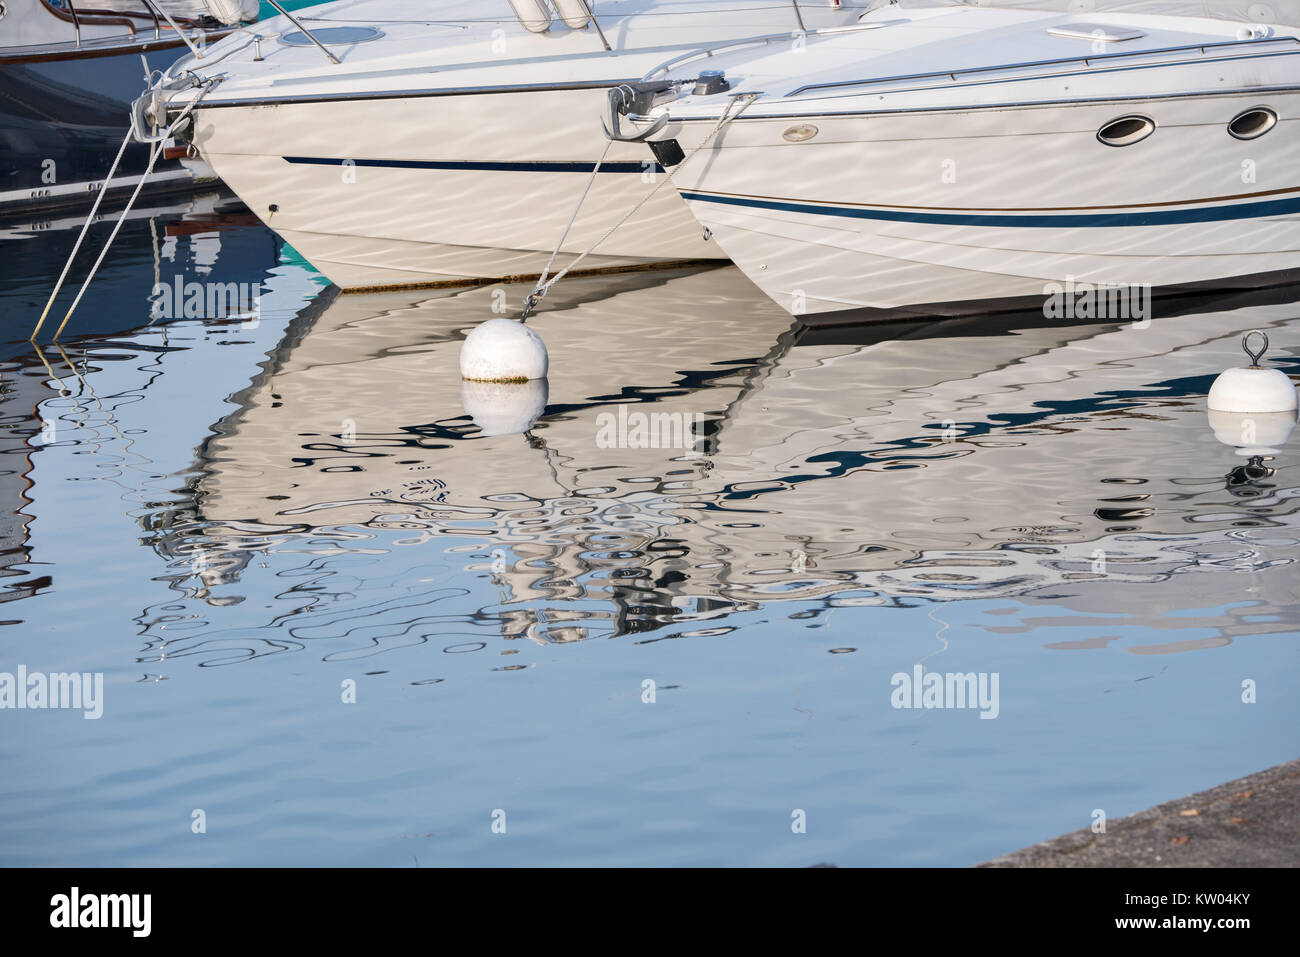 Le riflessioni di stuoie e gli scafi delle barche sul lago di Ginevra, Svizzera Foto Stock